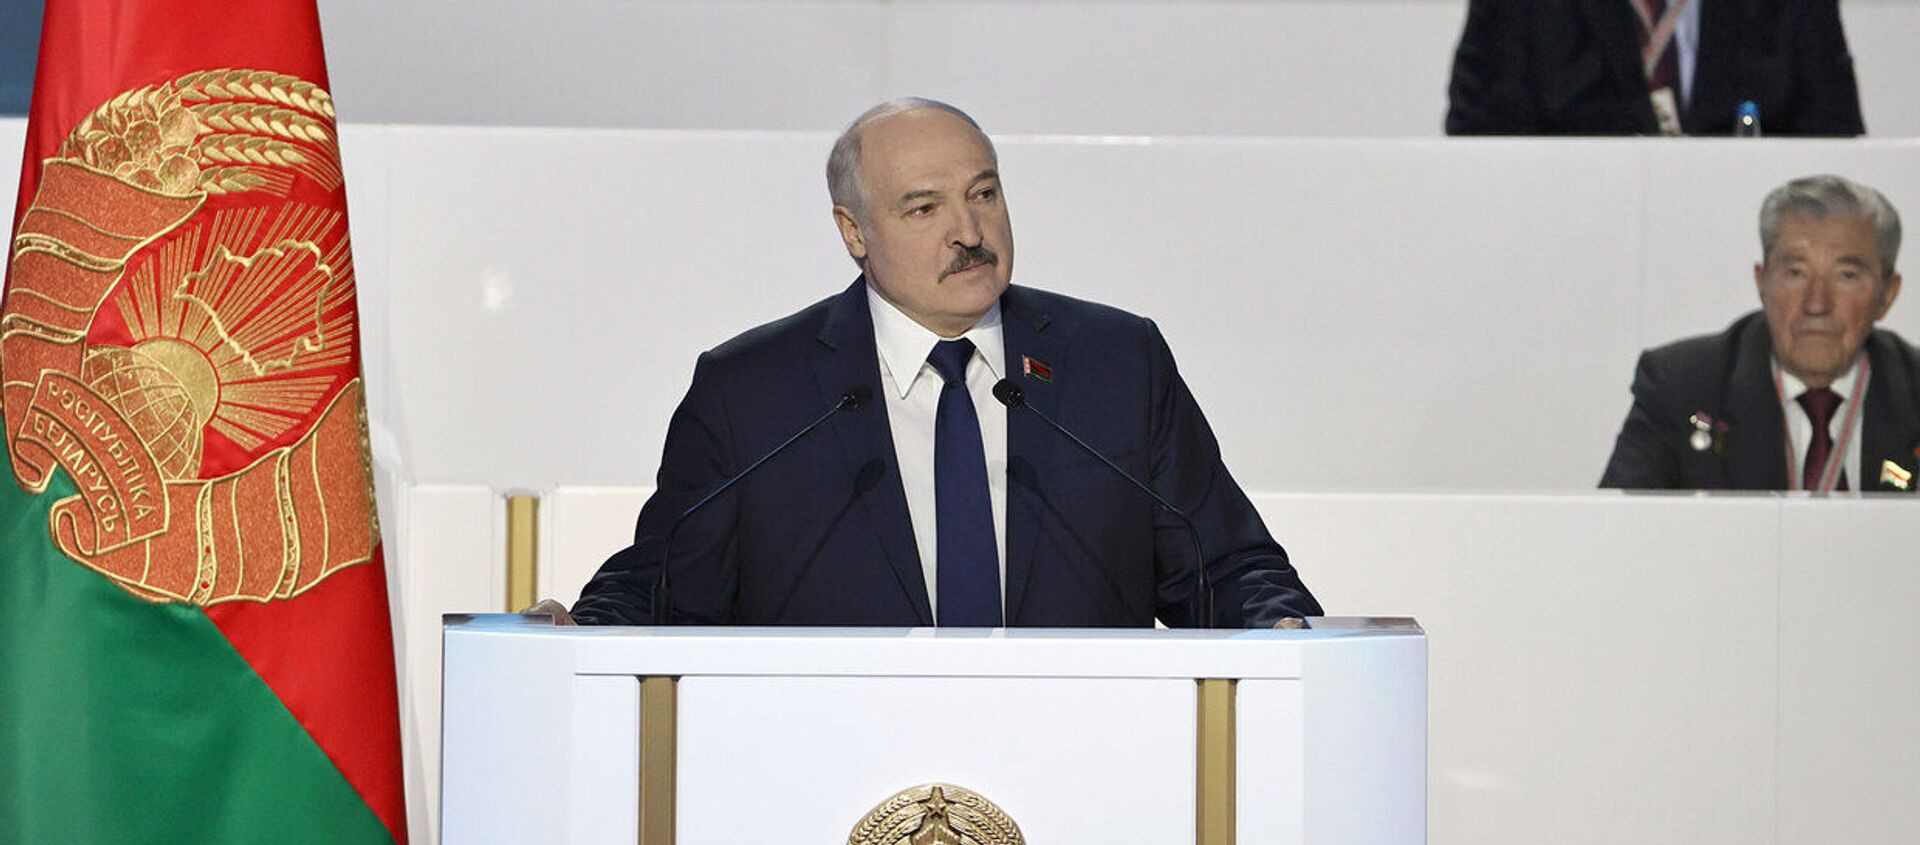 Выступление Лукашенко в начале ВНС - Sputnik Беларусь, 1920, 11.02.2021